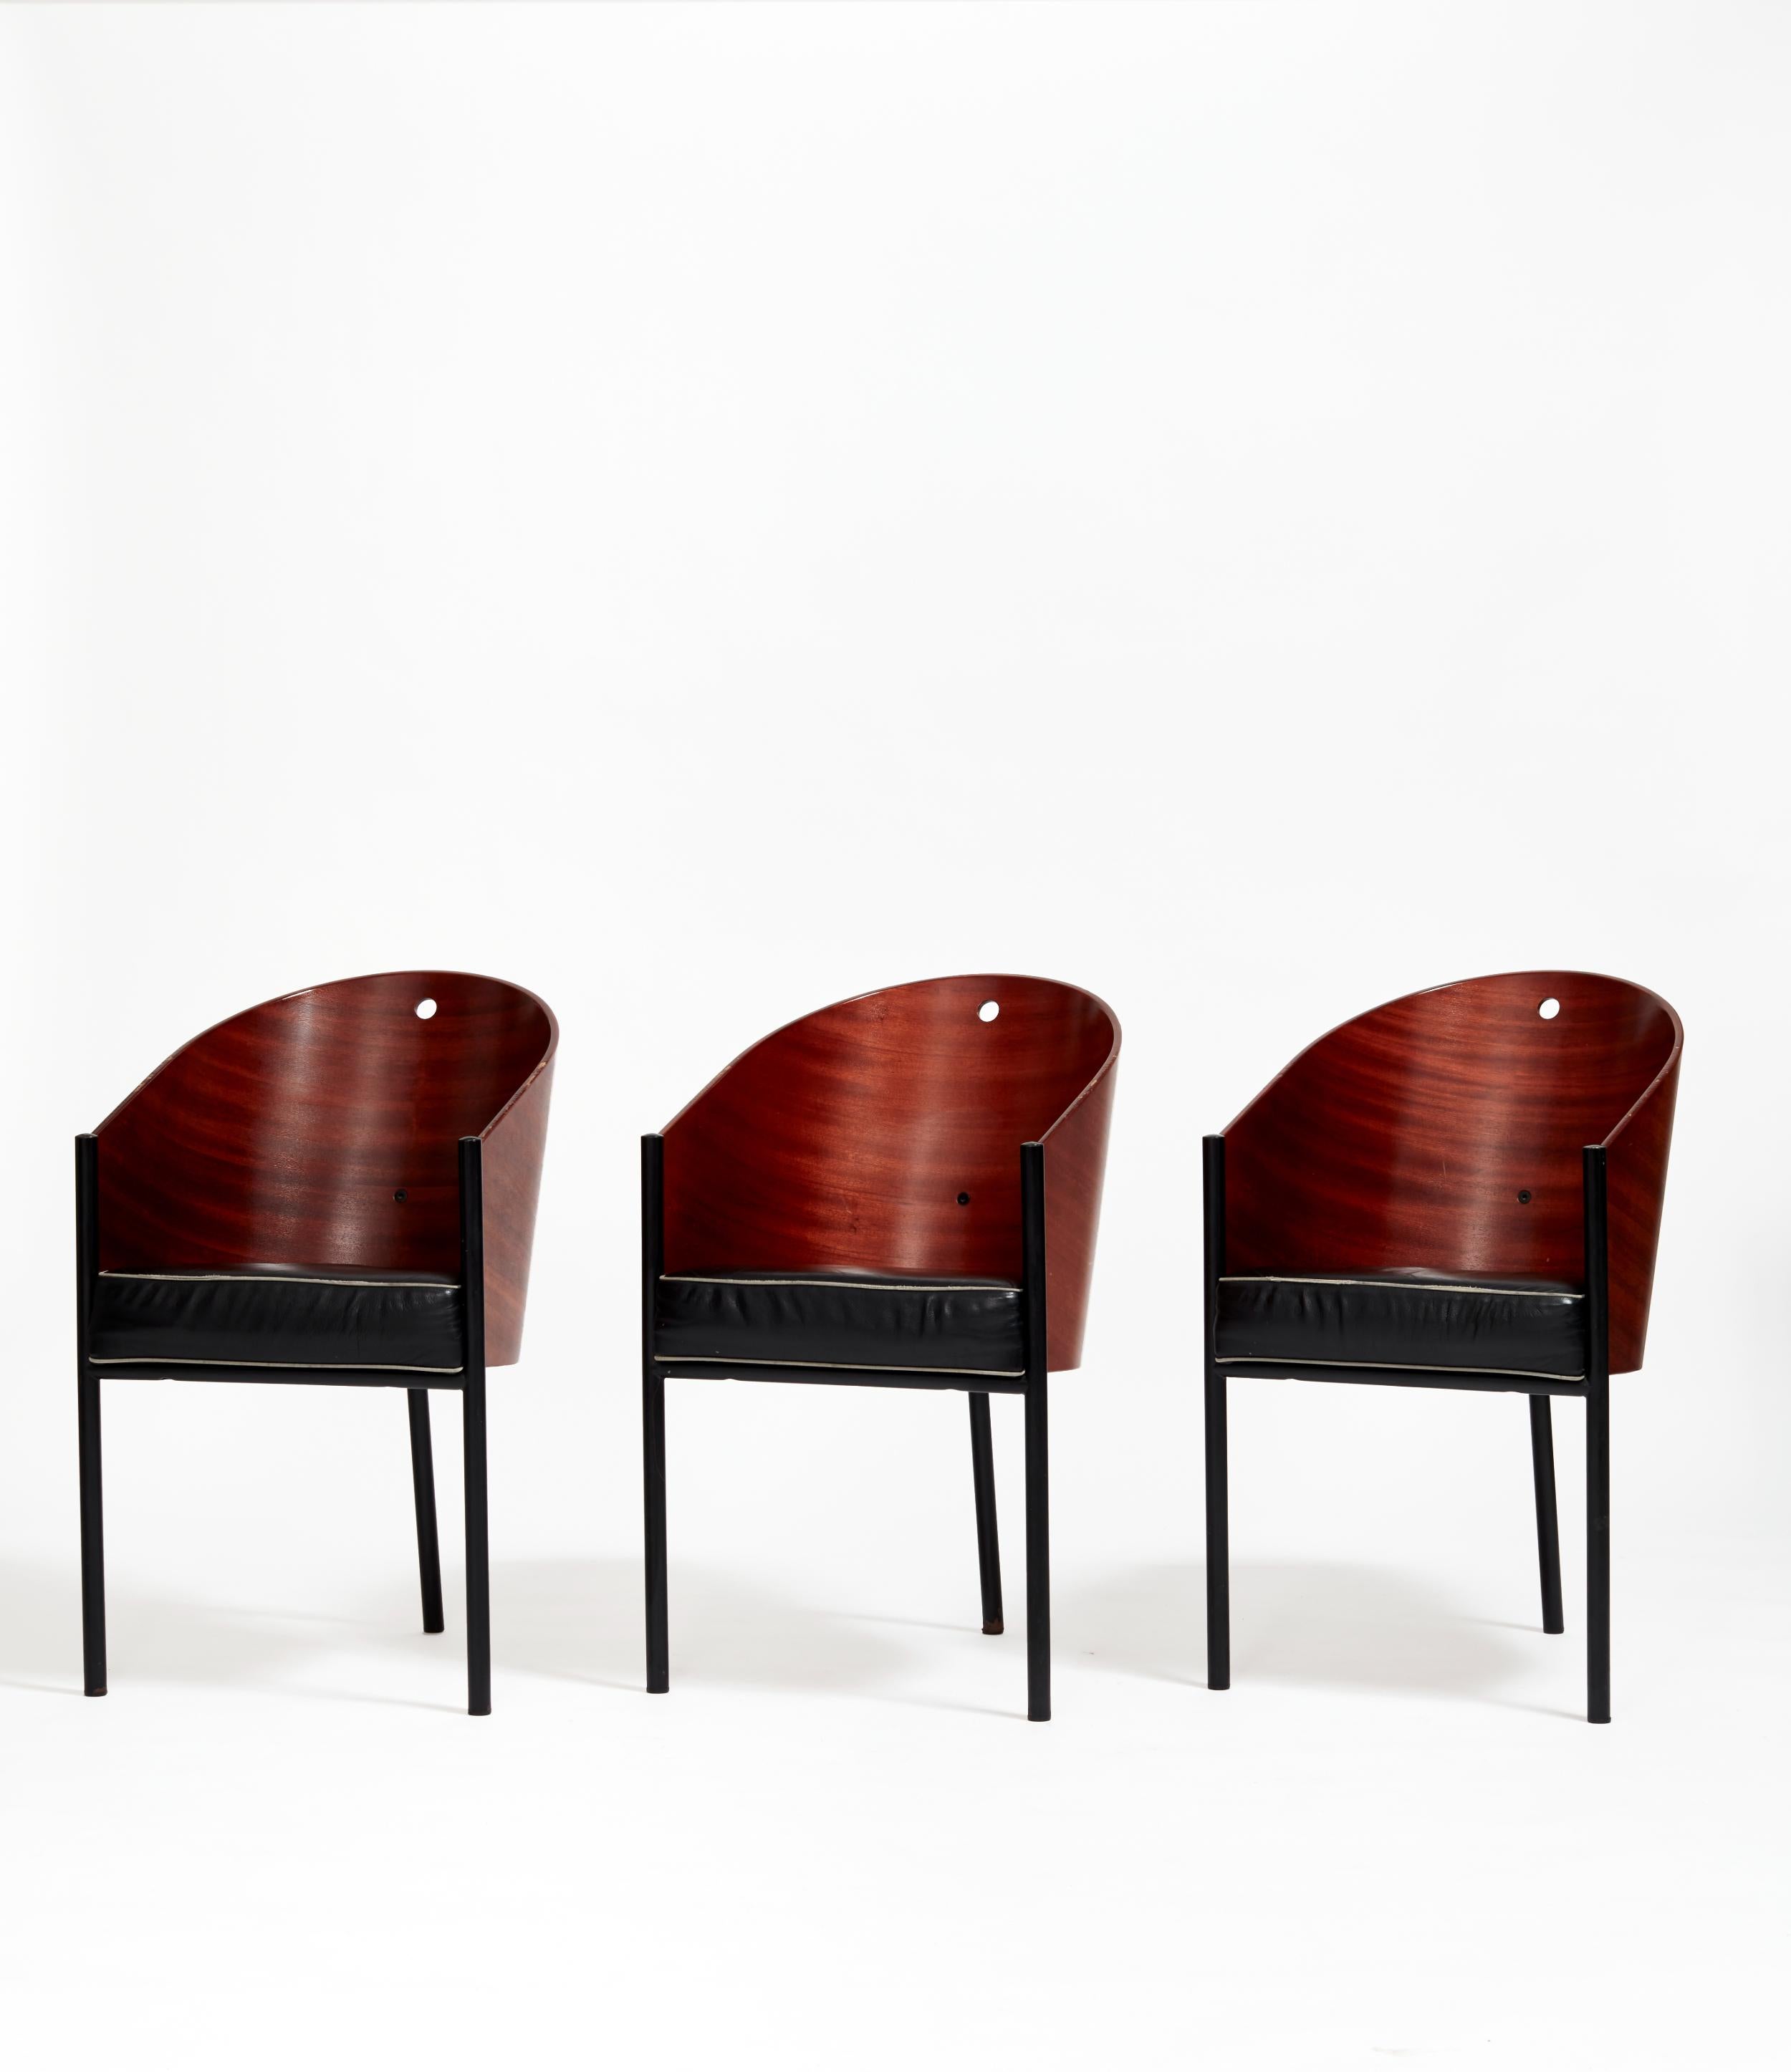 La chaise Costes exprime la multiplicité inhérente à l'objet quotidien en tant qu'objectif de la recherche de la forme ; sa structure en bois, semblable à une coquille, est due à l'enthousiasme de Starck pour l'exploration de la forme dans un